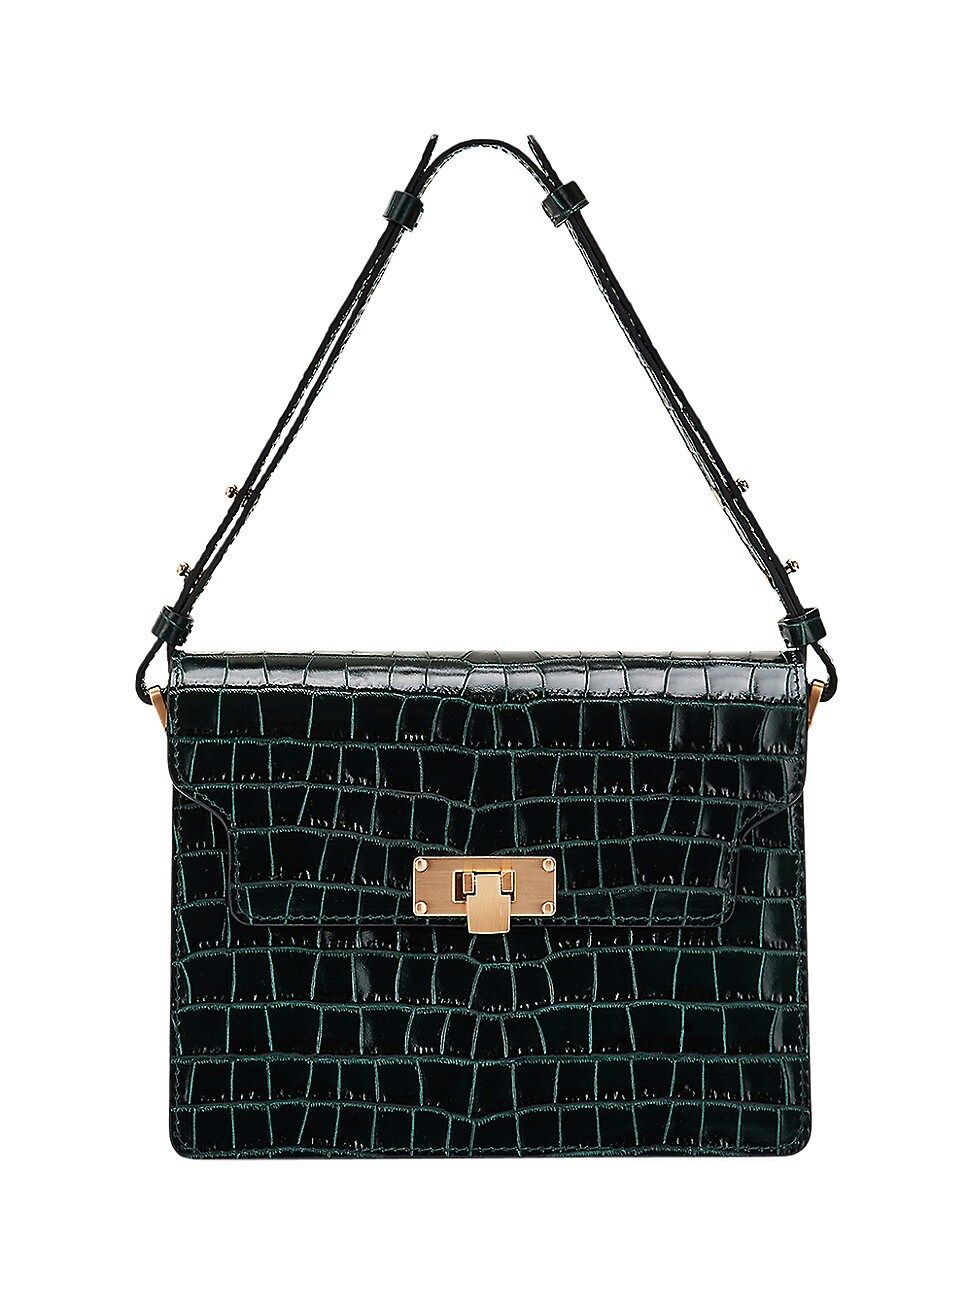 Marge Sherwood Women's Croc-Embossed Leather Shoulder Bag - Green Croc | Saks Fifth Avenue